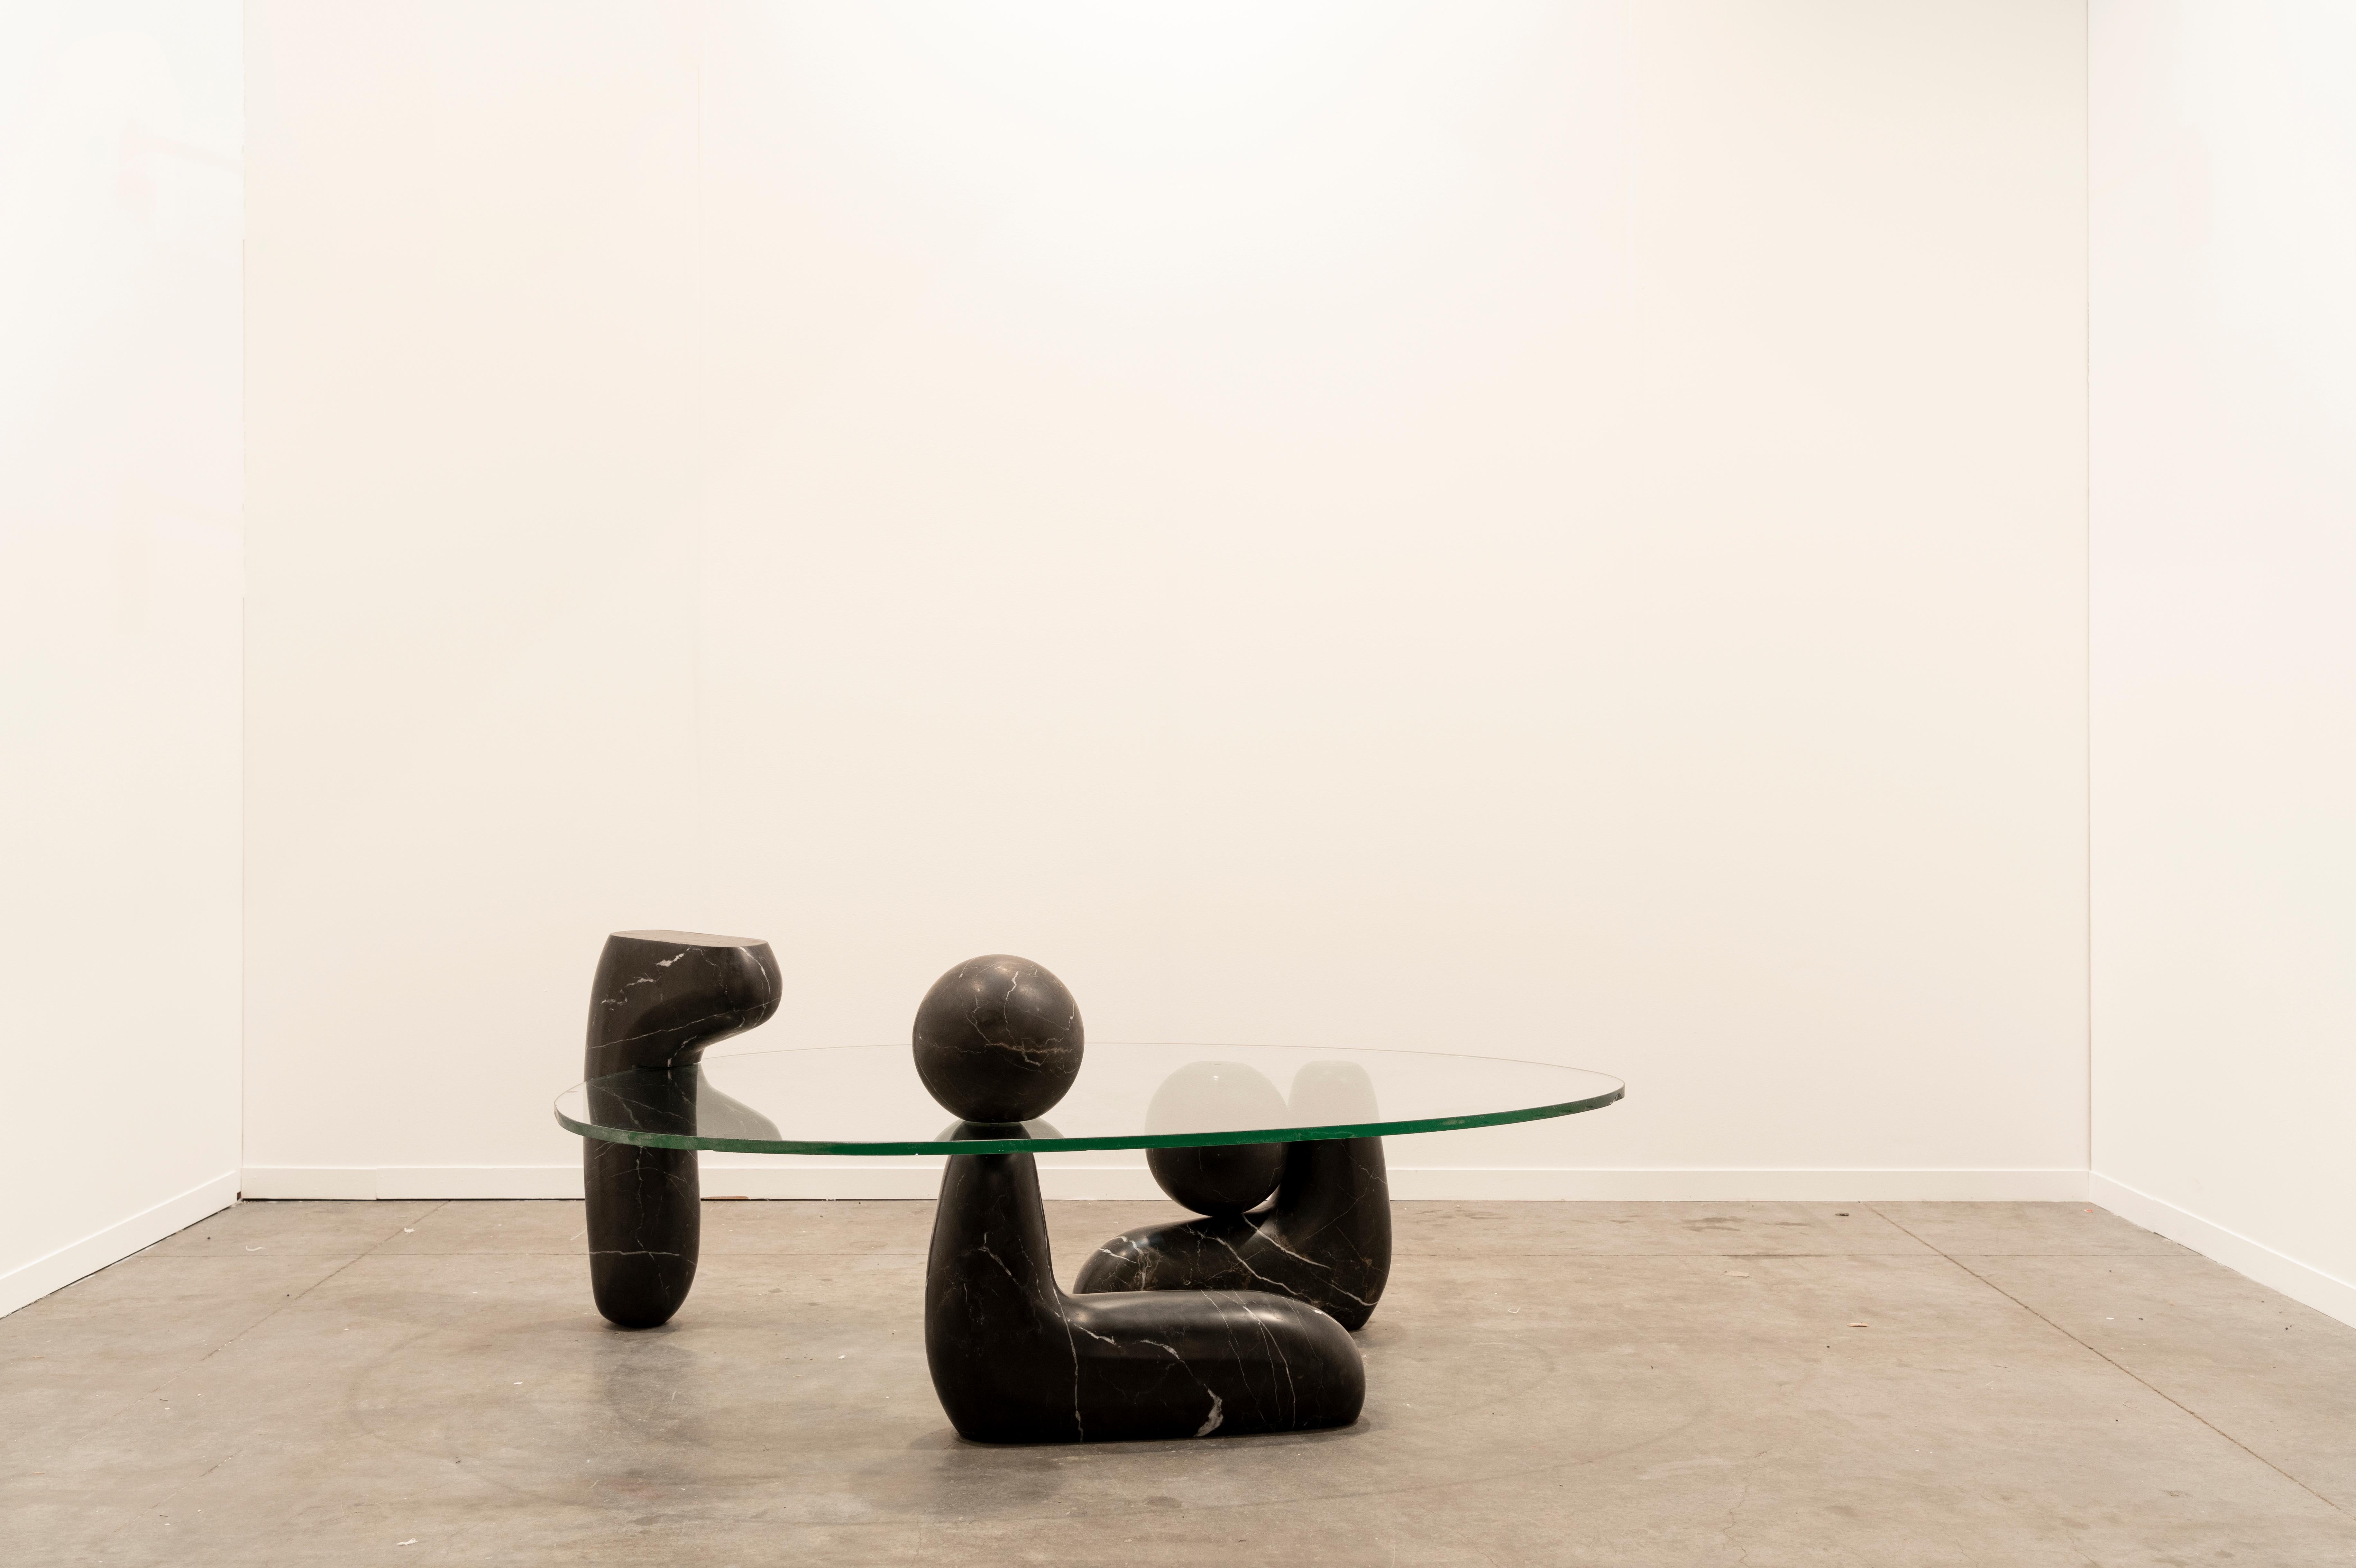 I. A PROPOS DE REBECA CORS
Rebeca CORS (Mexique, 1988). 
Son travail oscille entre la sculpture et l'objet utilitaire, étudiant les limites et les points de rencontre entre ces deux concepts. ? L'intention de son travail est de remettre en